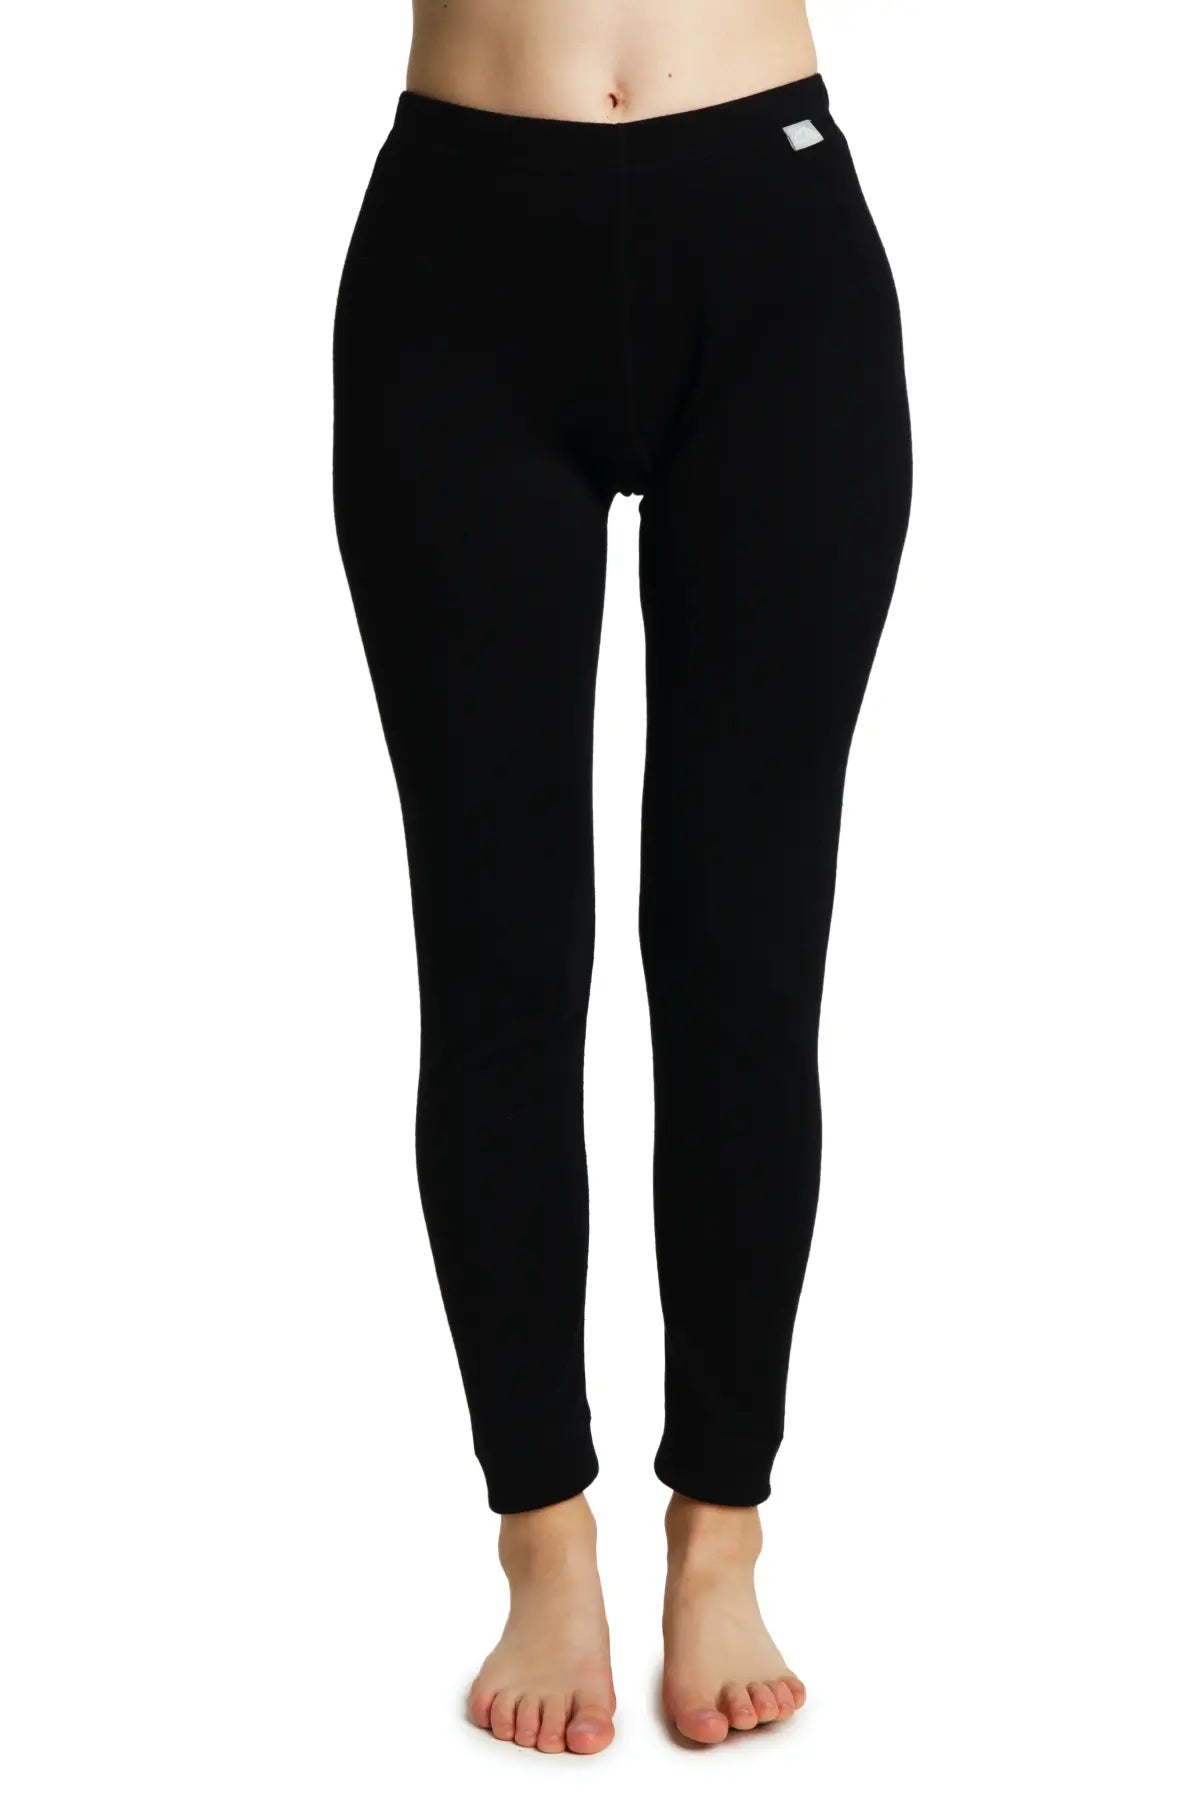 Women's Merino Wool Pants - Base Layer Black, Bottom, Underwear, Thermal  Leggings, Midweight